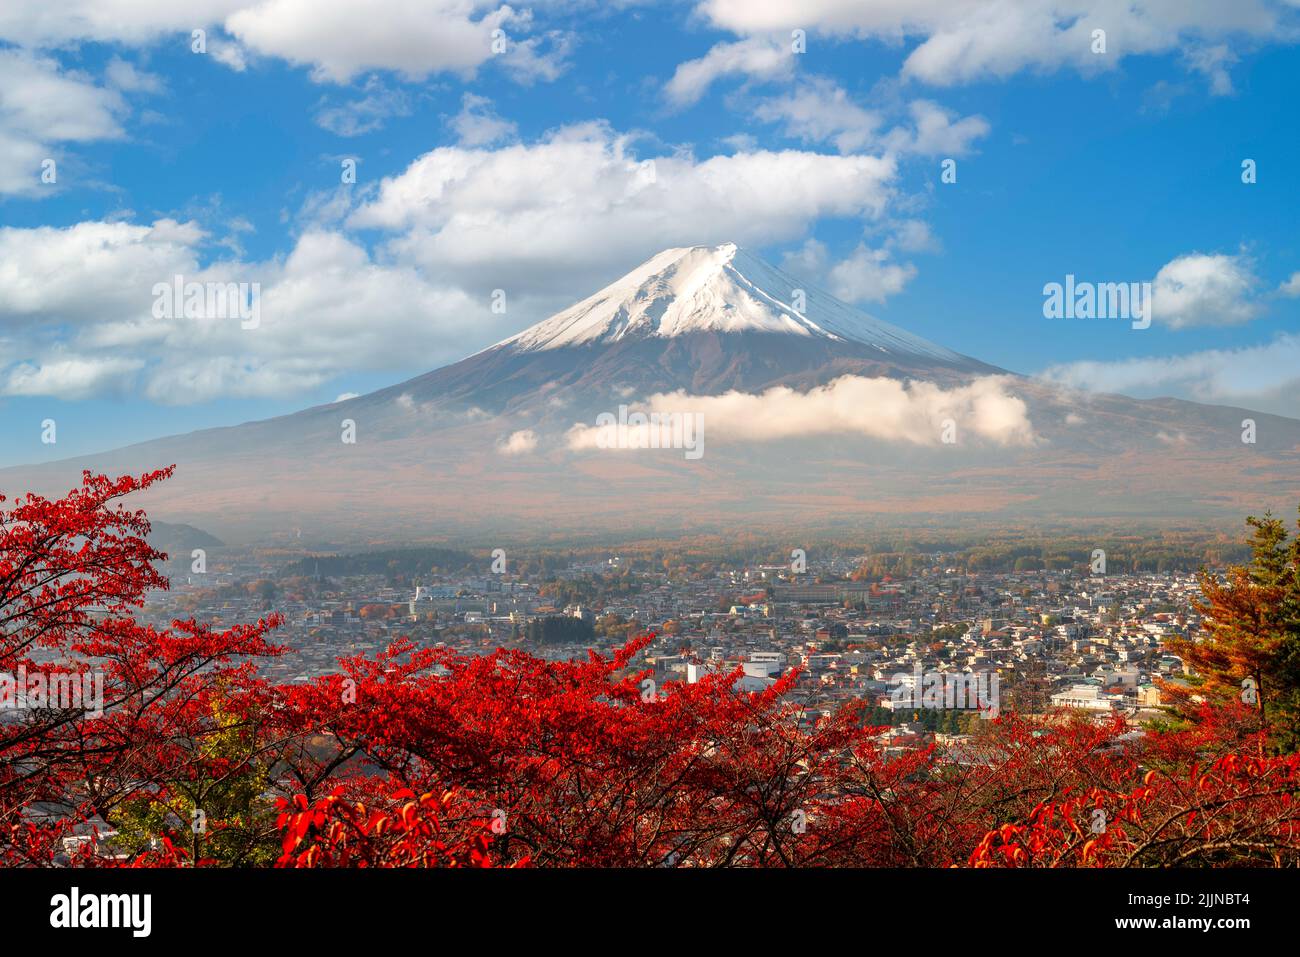 Fujiyoshida, Japon avec feuillage d'automne entourant le mont Fuji en automne. Banque D'Images